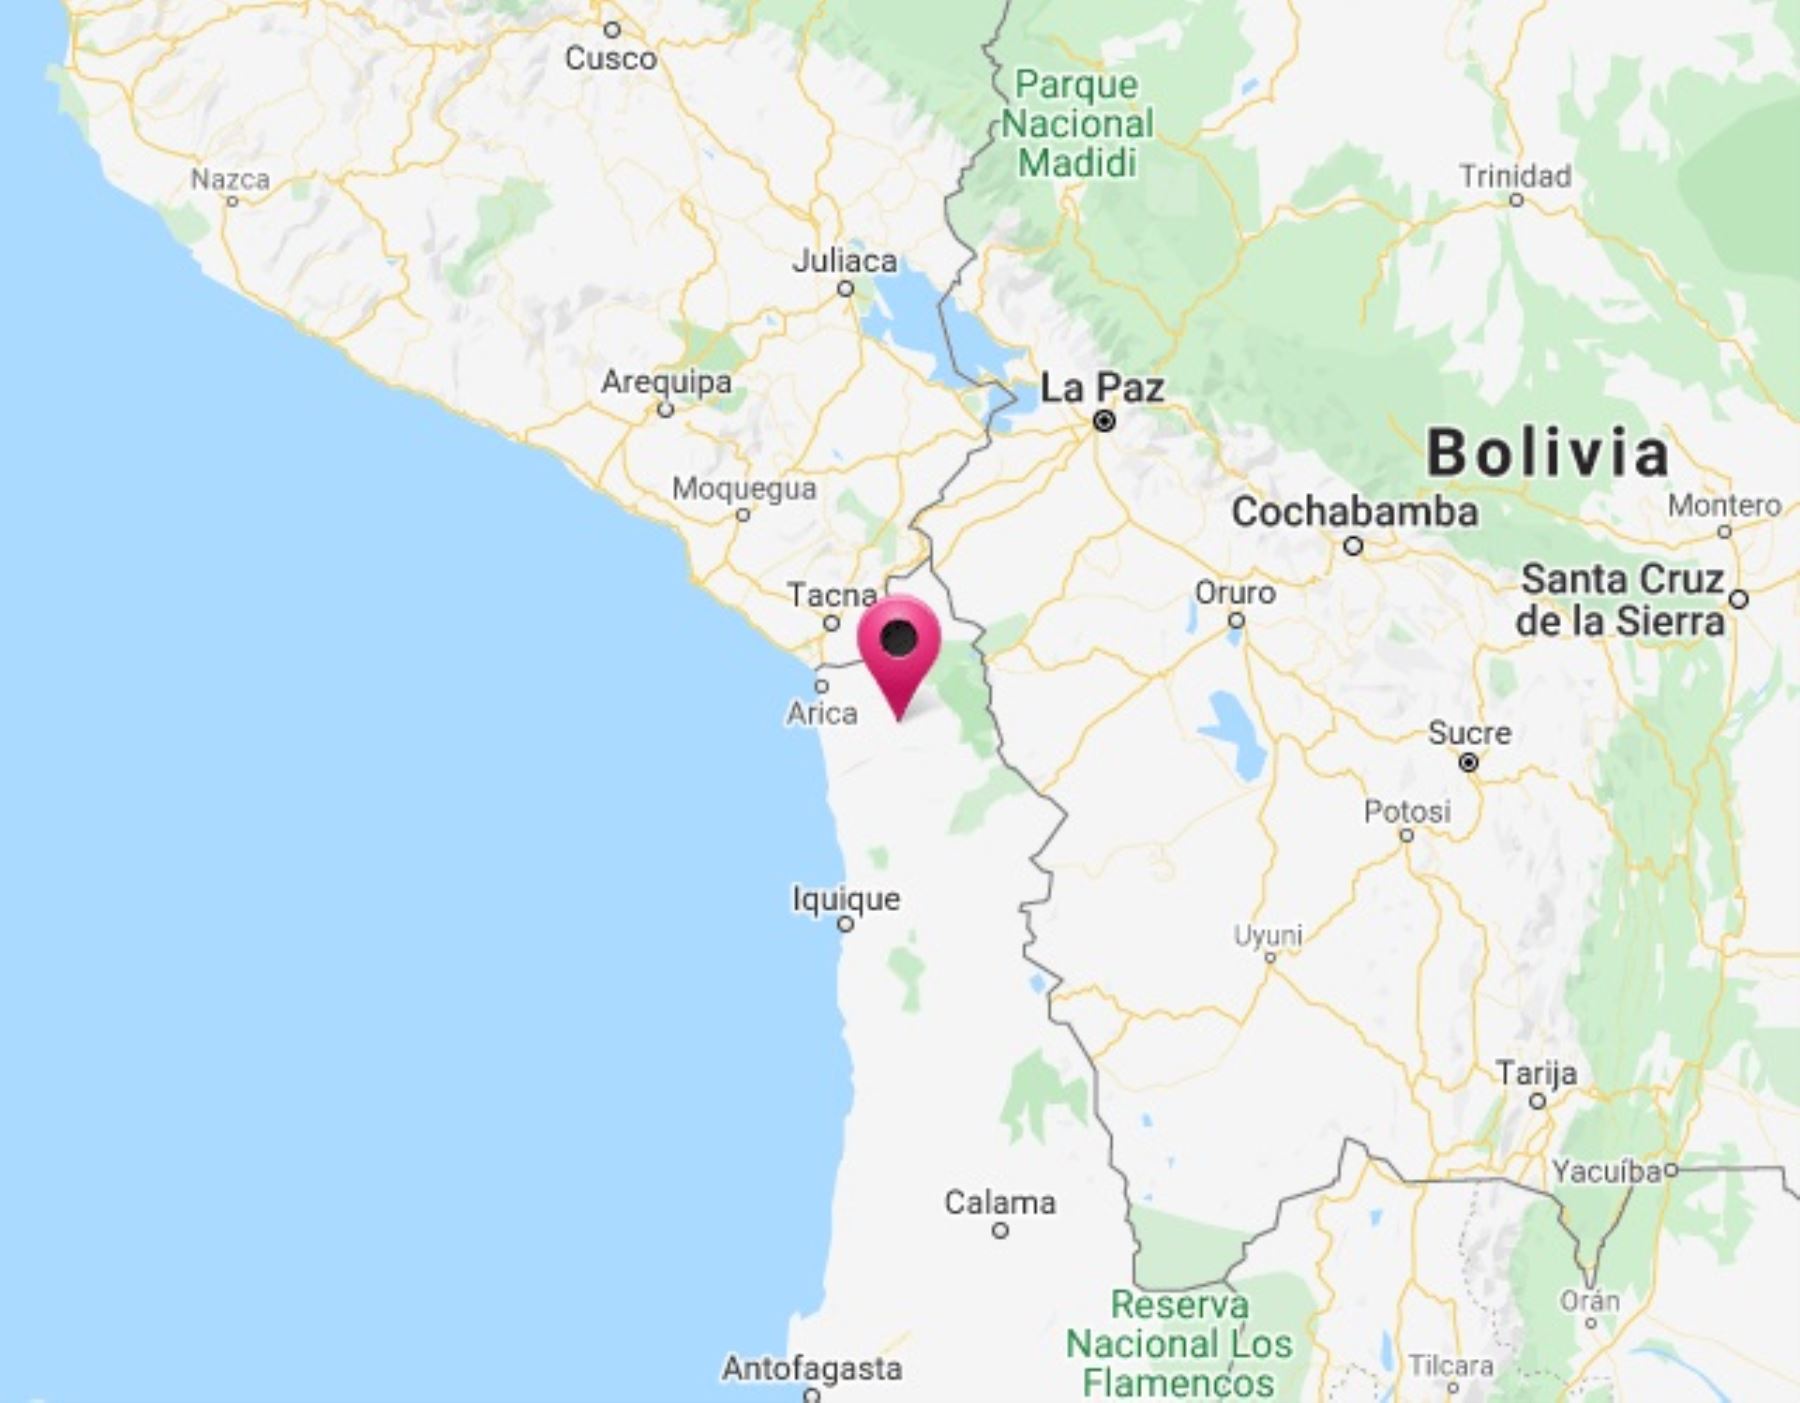 Tacna fue remecida esta mañana por un sismo de magnitud 4.9 cuyo epicentro se localizó en el vecino país de Chile.